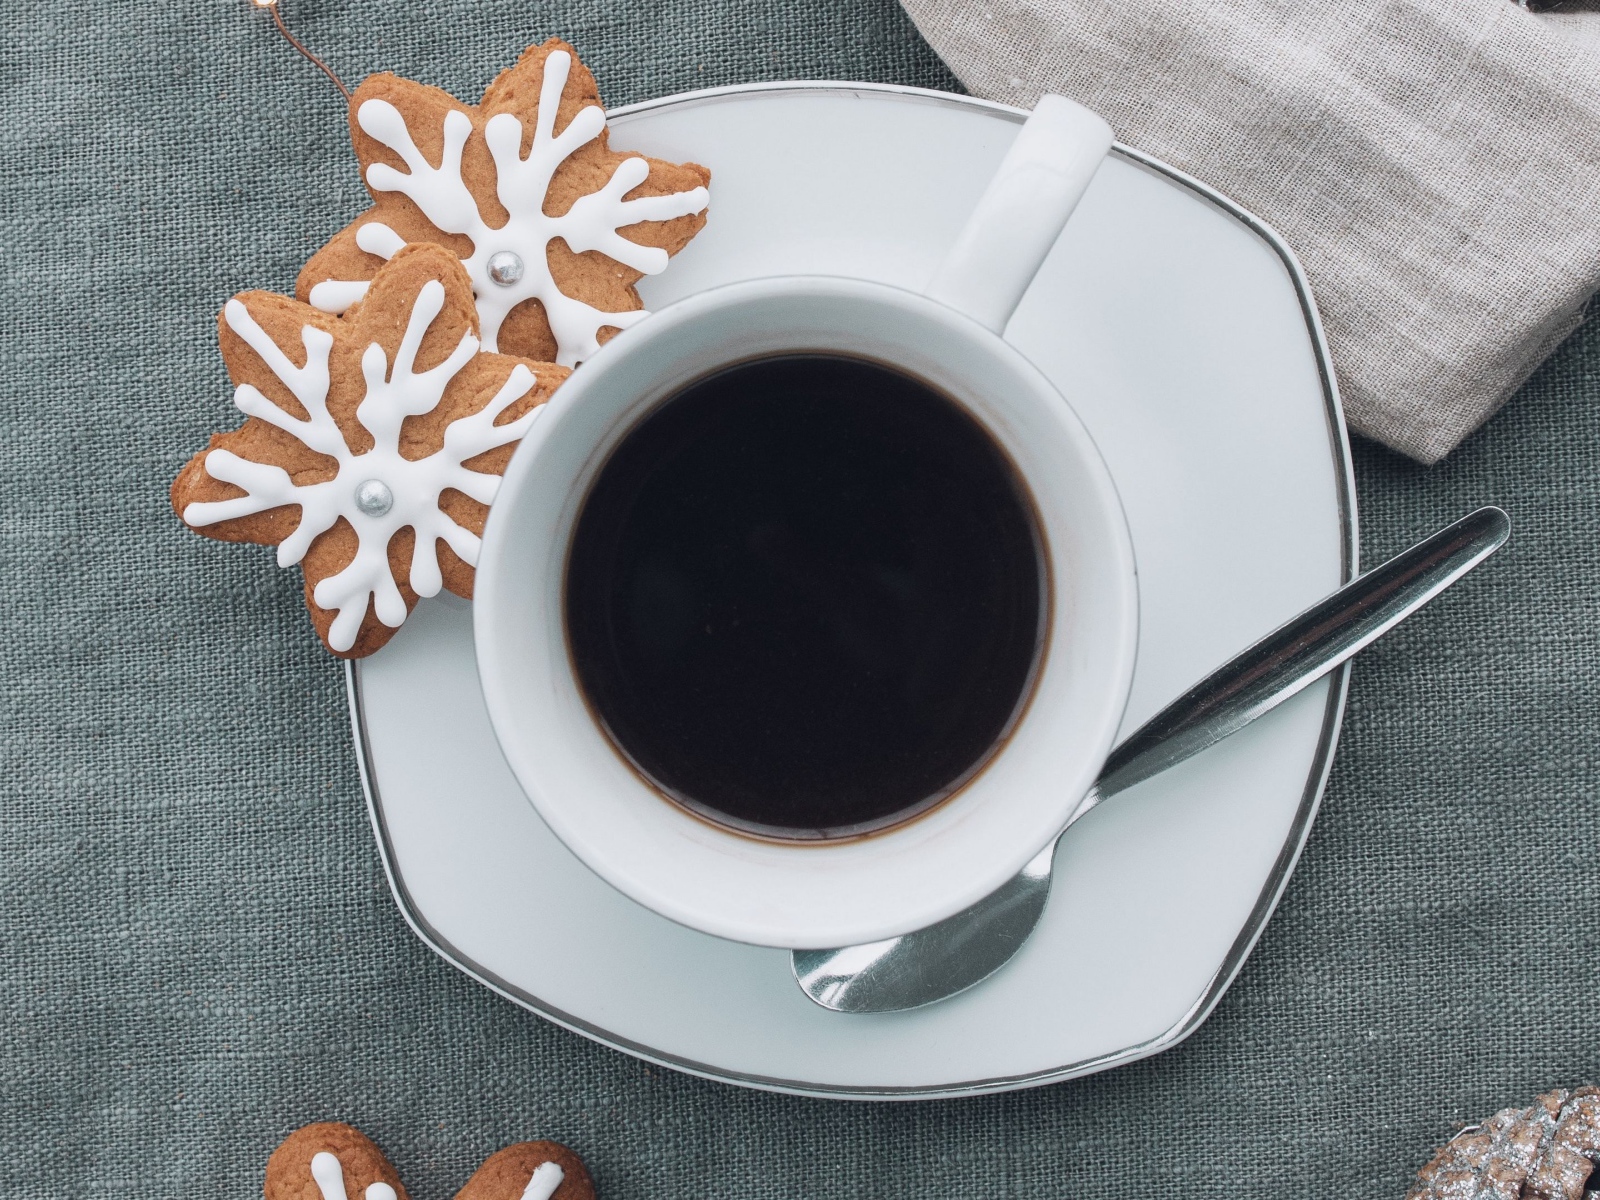 Белая чашка горячего кофе с печеньем 